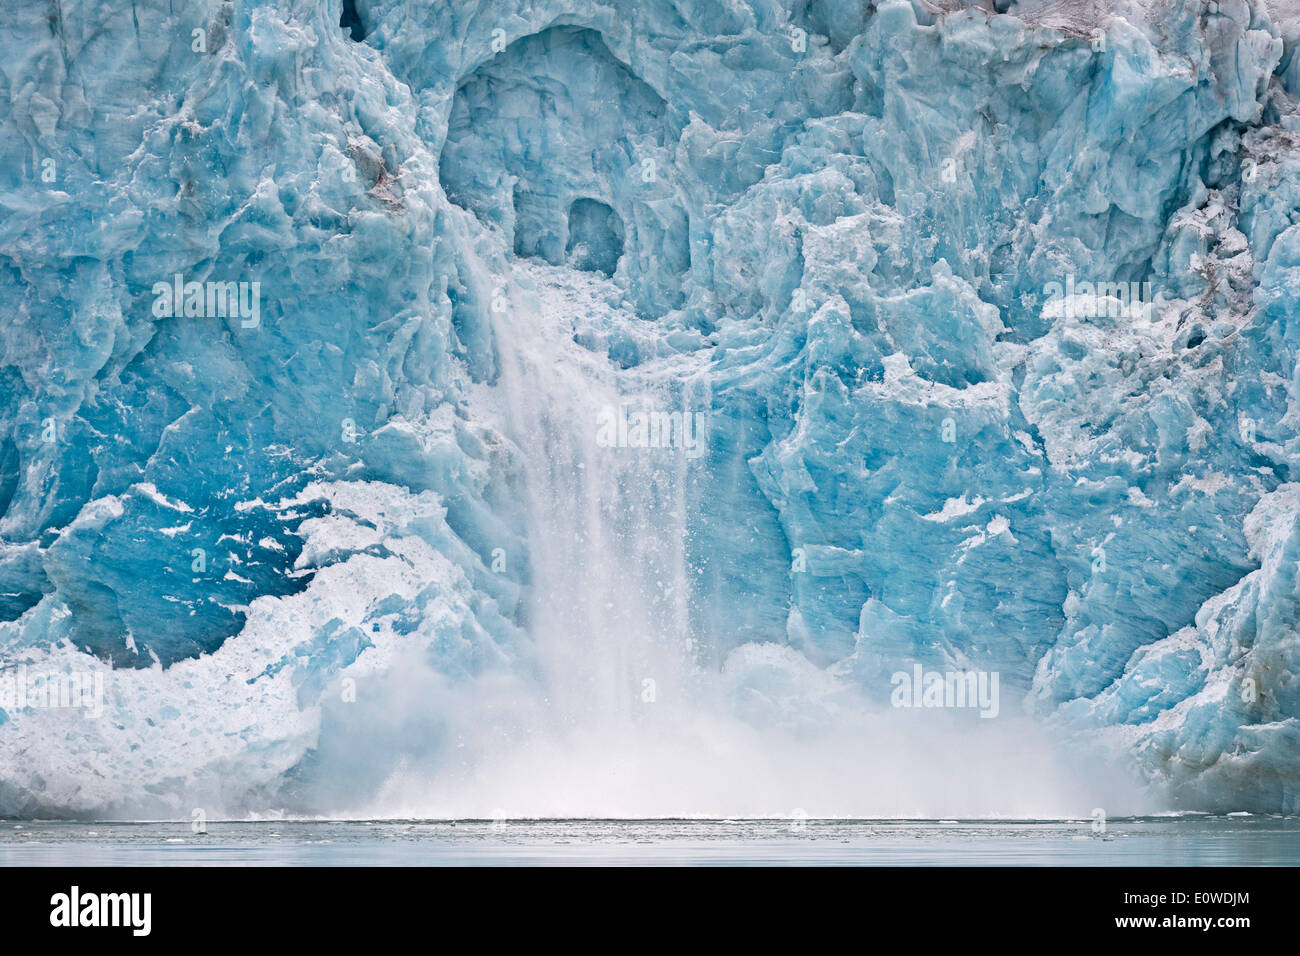 Glacier de mise bas, bord du Glacier, Liefdefjorden Monacobreen, Spitsbergen, Svalbard, îles Svalbard et Jan Mayen (Norvège) Banque D'Images